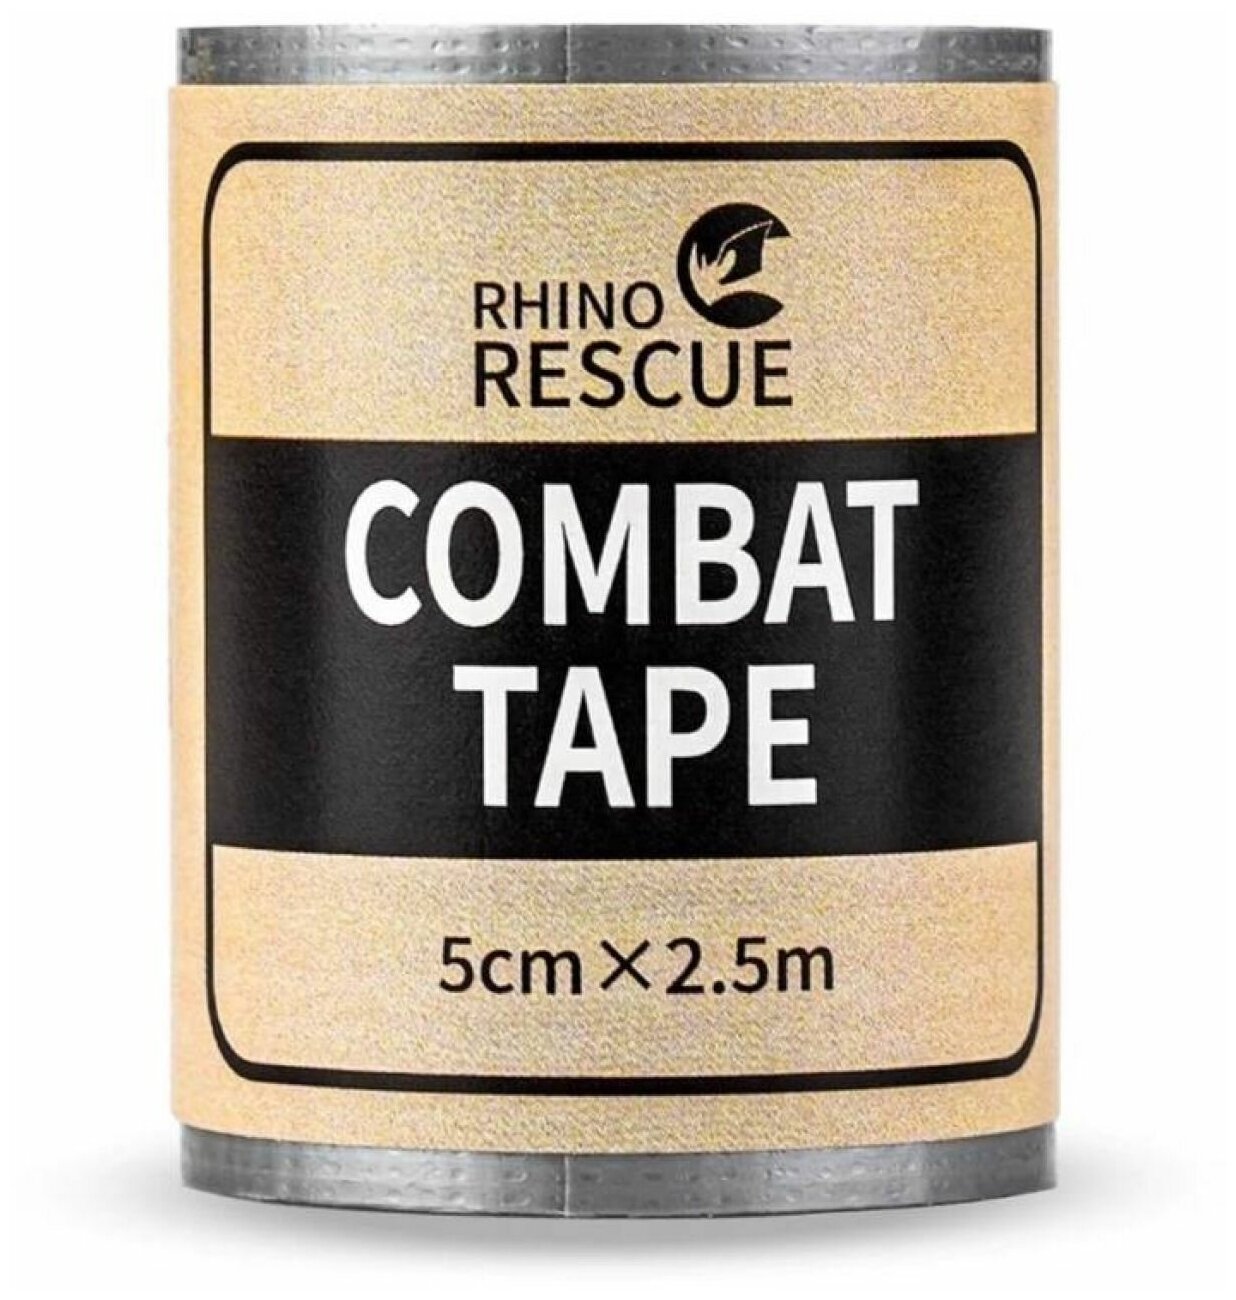 COMBAT TAPE Rhino Rescue Рино SOS Боевой/военный медицинский армированный тактический скотч/клейкая лента/пластырь/изолента в аптечку